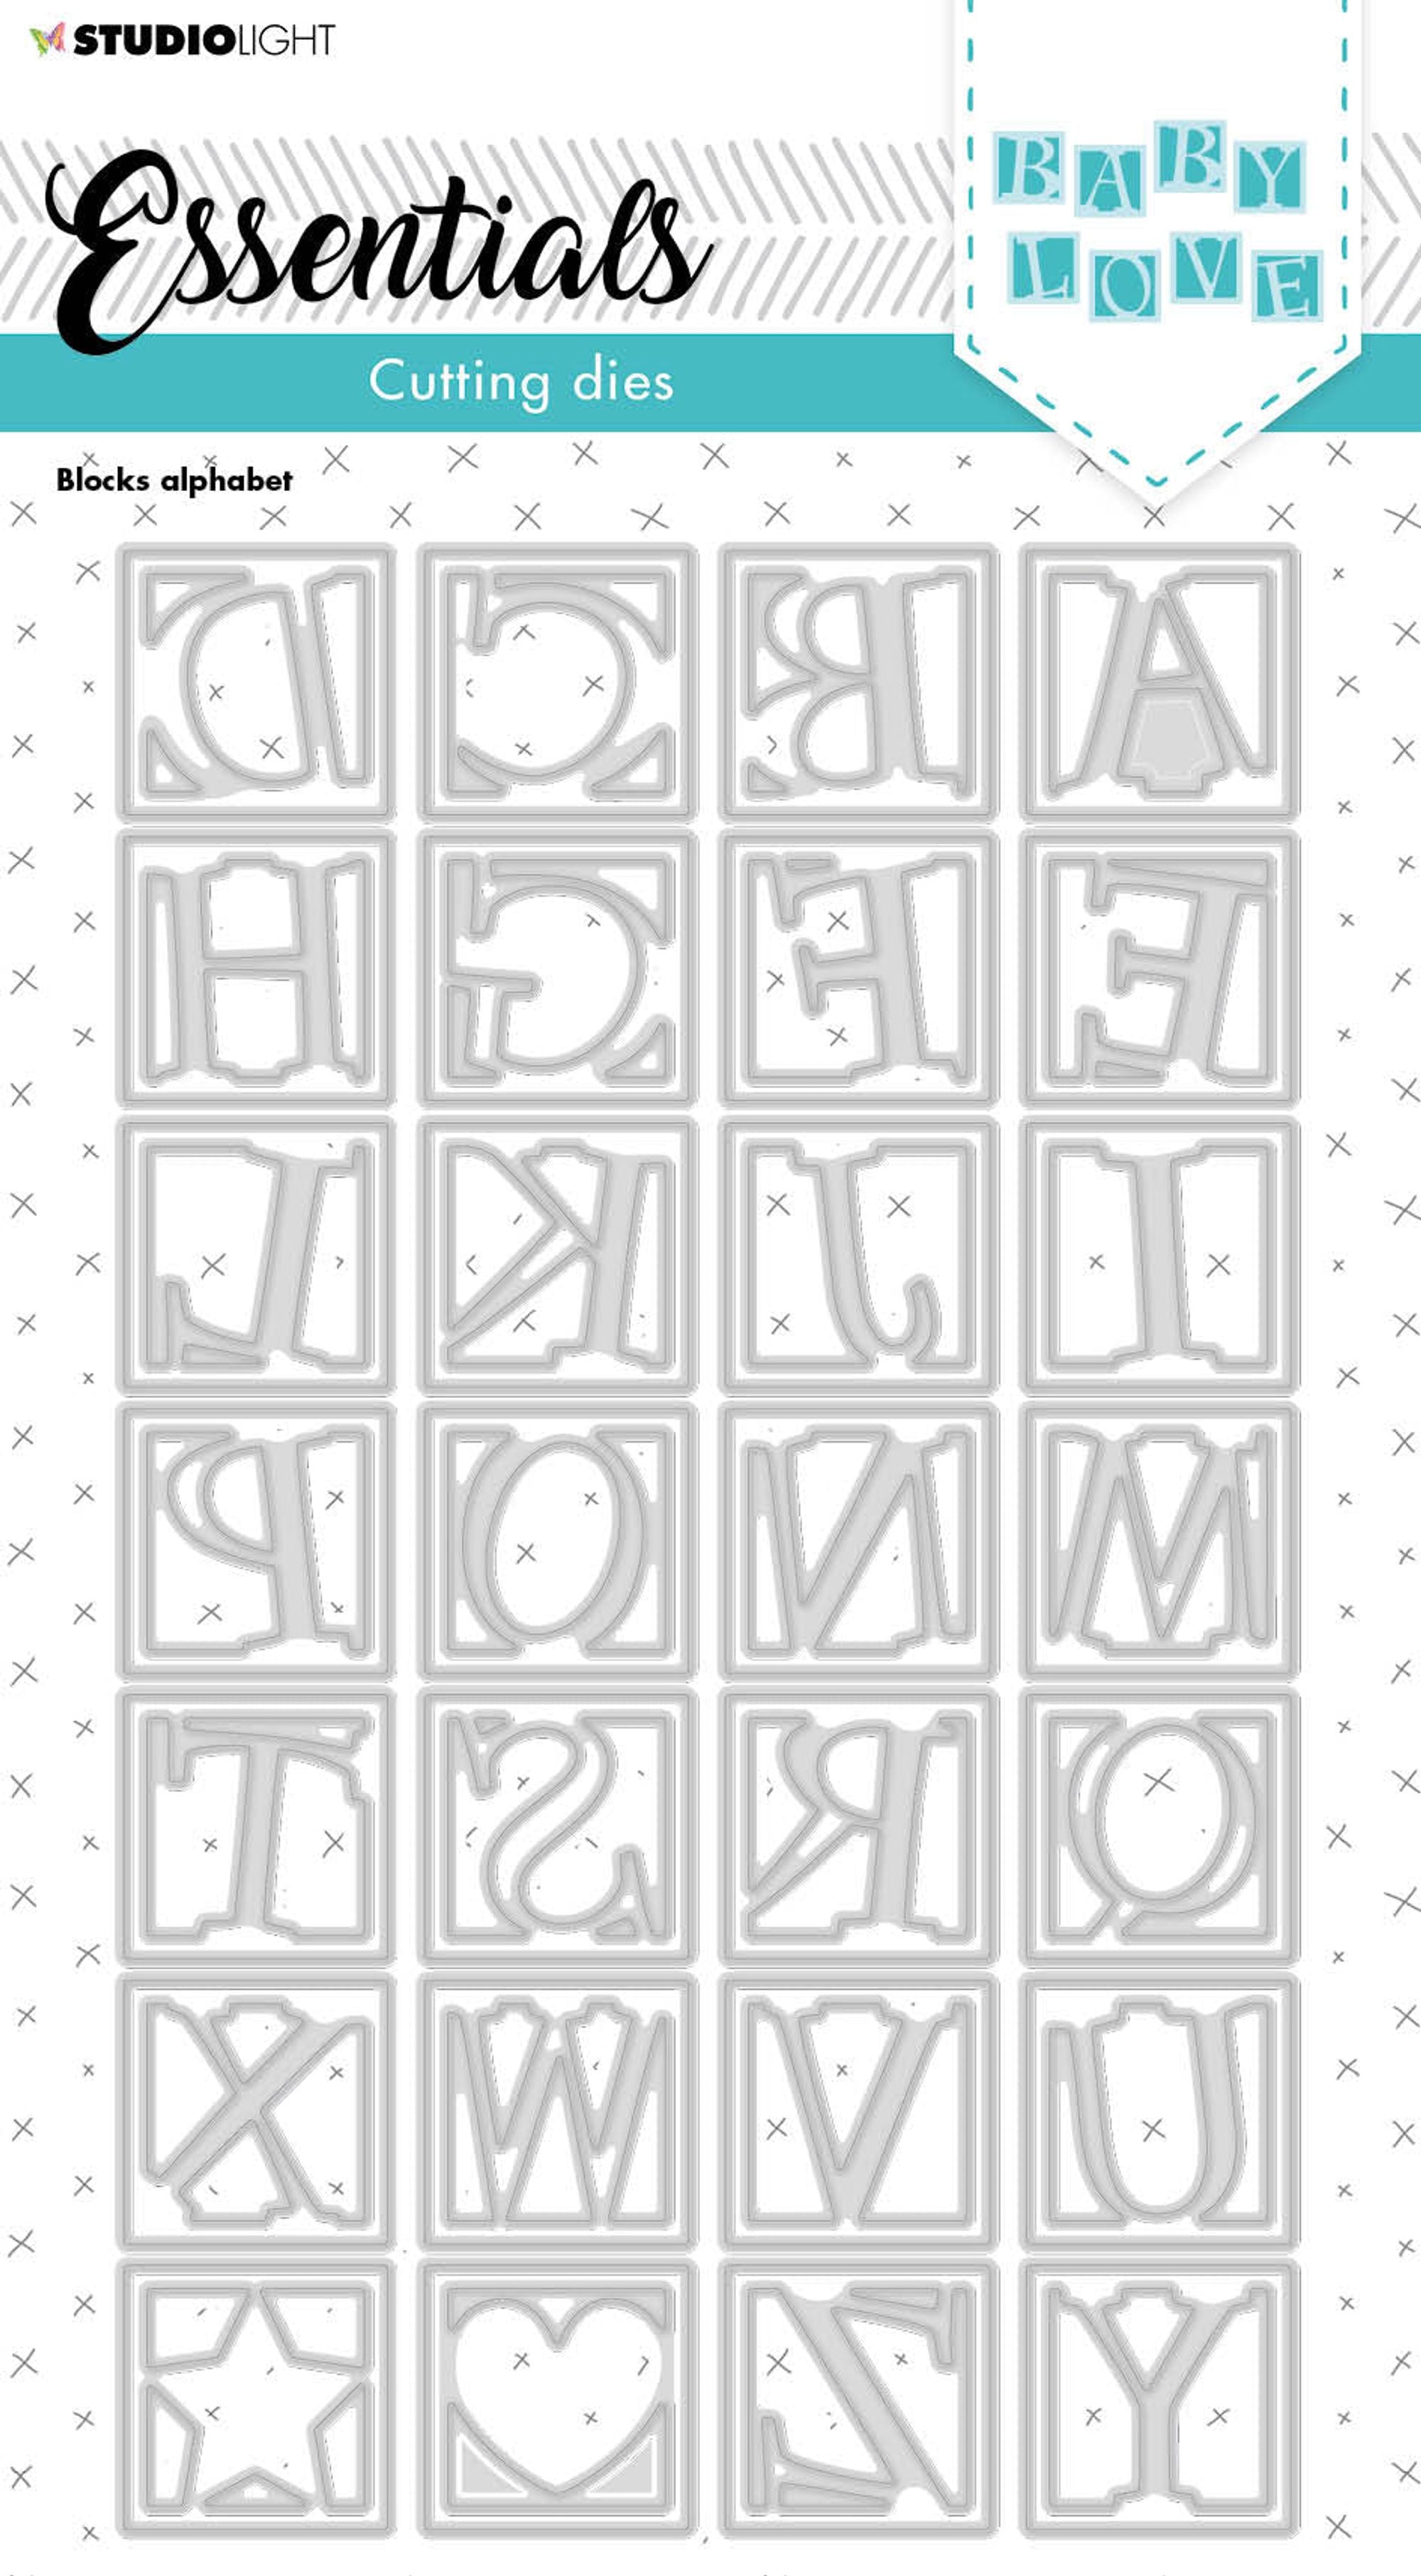 SL Cutting Die Block Alphabet Essentials 133x224x1mm 56 PC nr.214